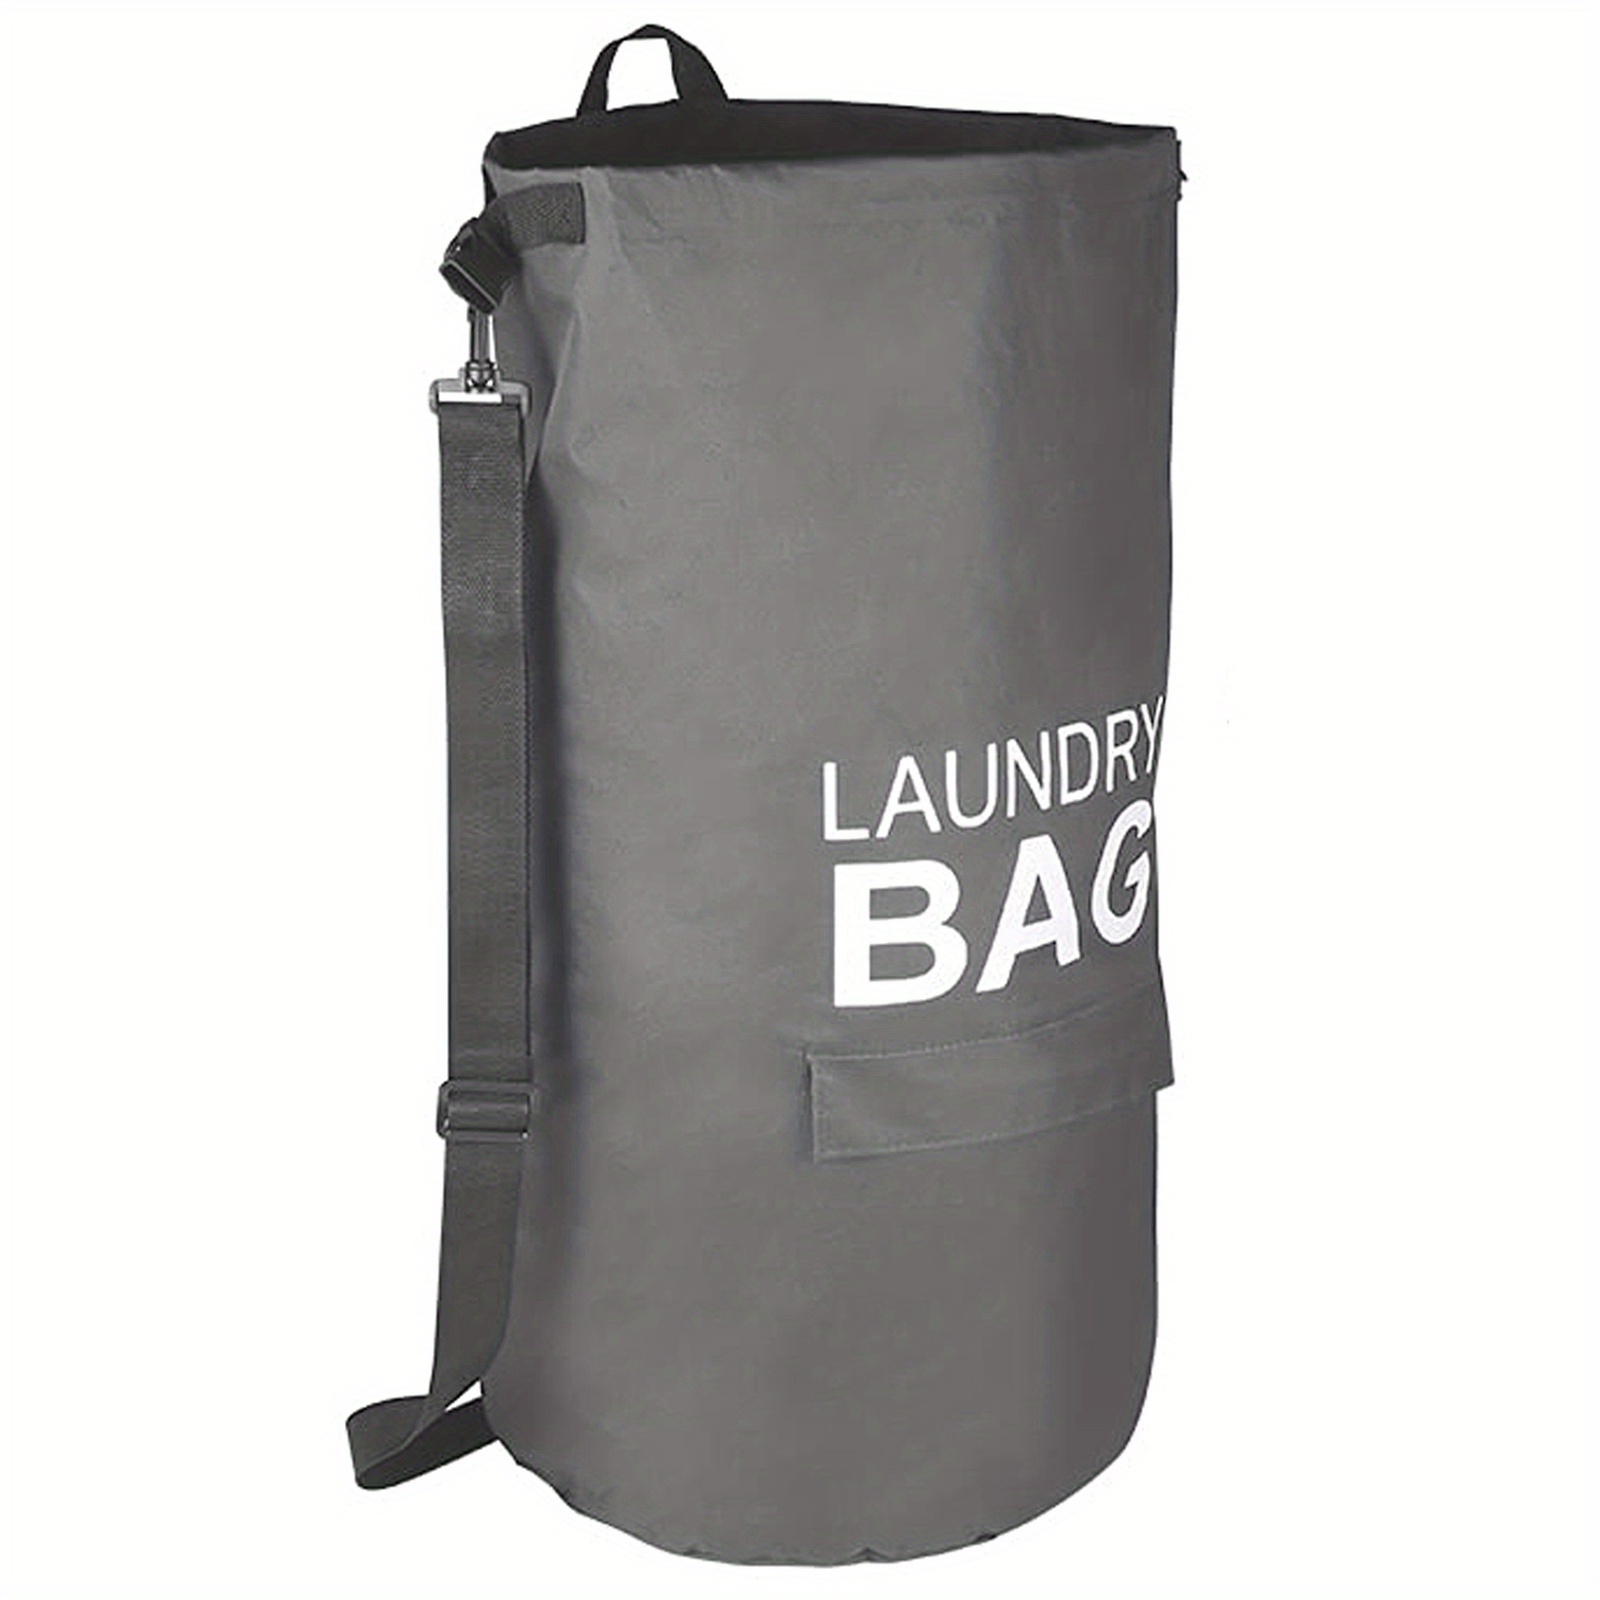 Hanging Large Capacity Laundry Basket Foldable Adjustable - Temu